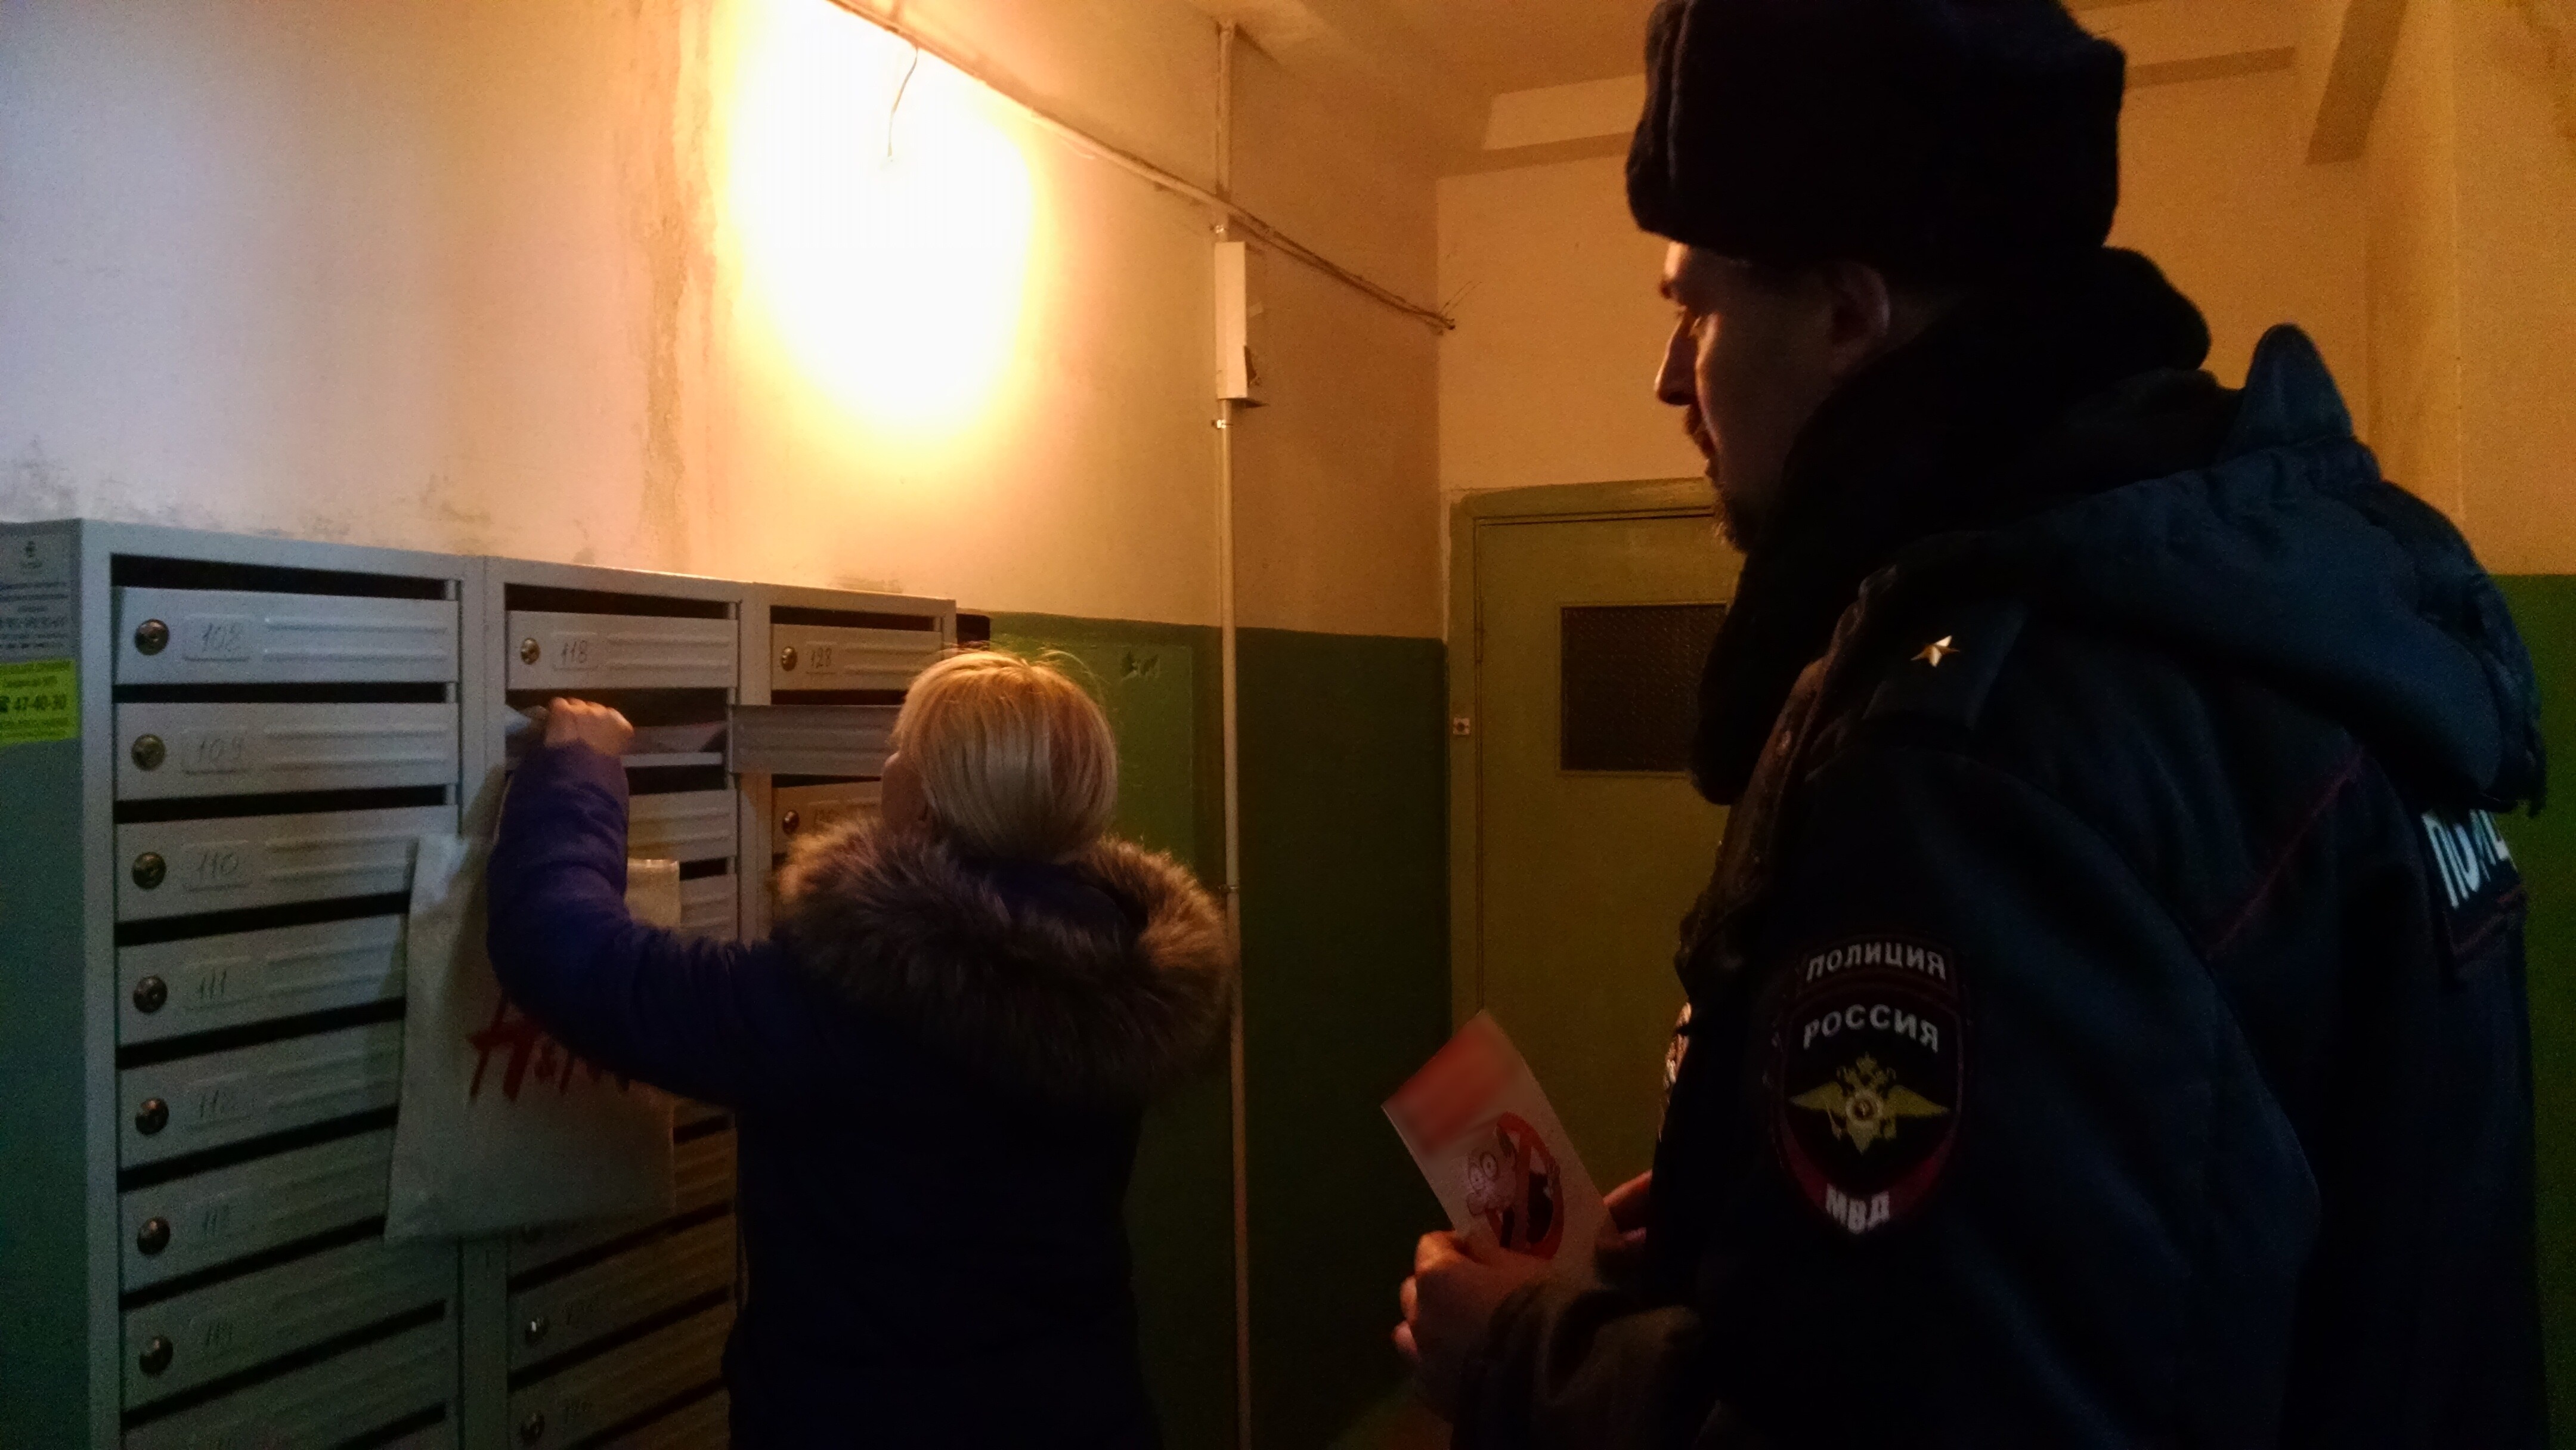 В Архангельске активист через суд взыскал с полиции компенсацию вреда за административное преследование